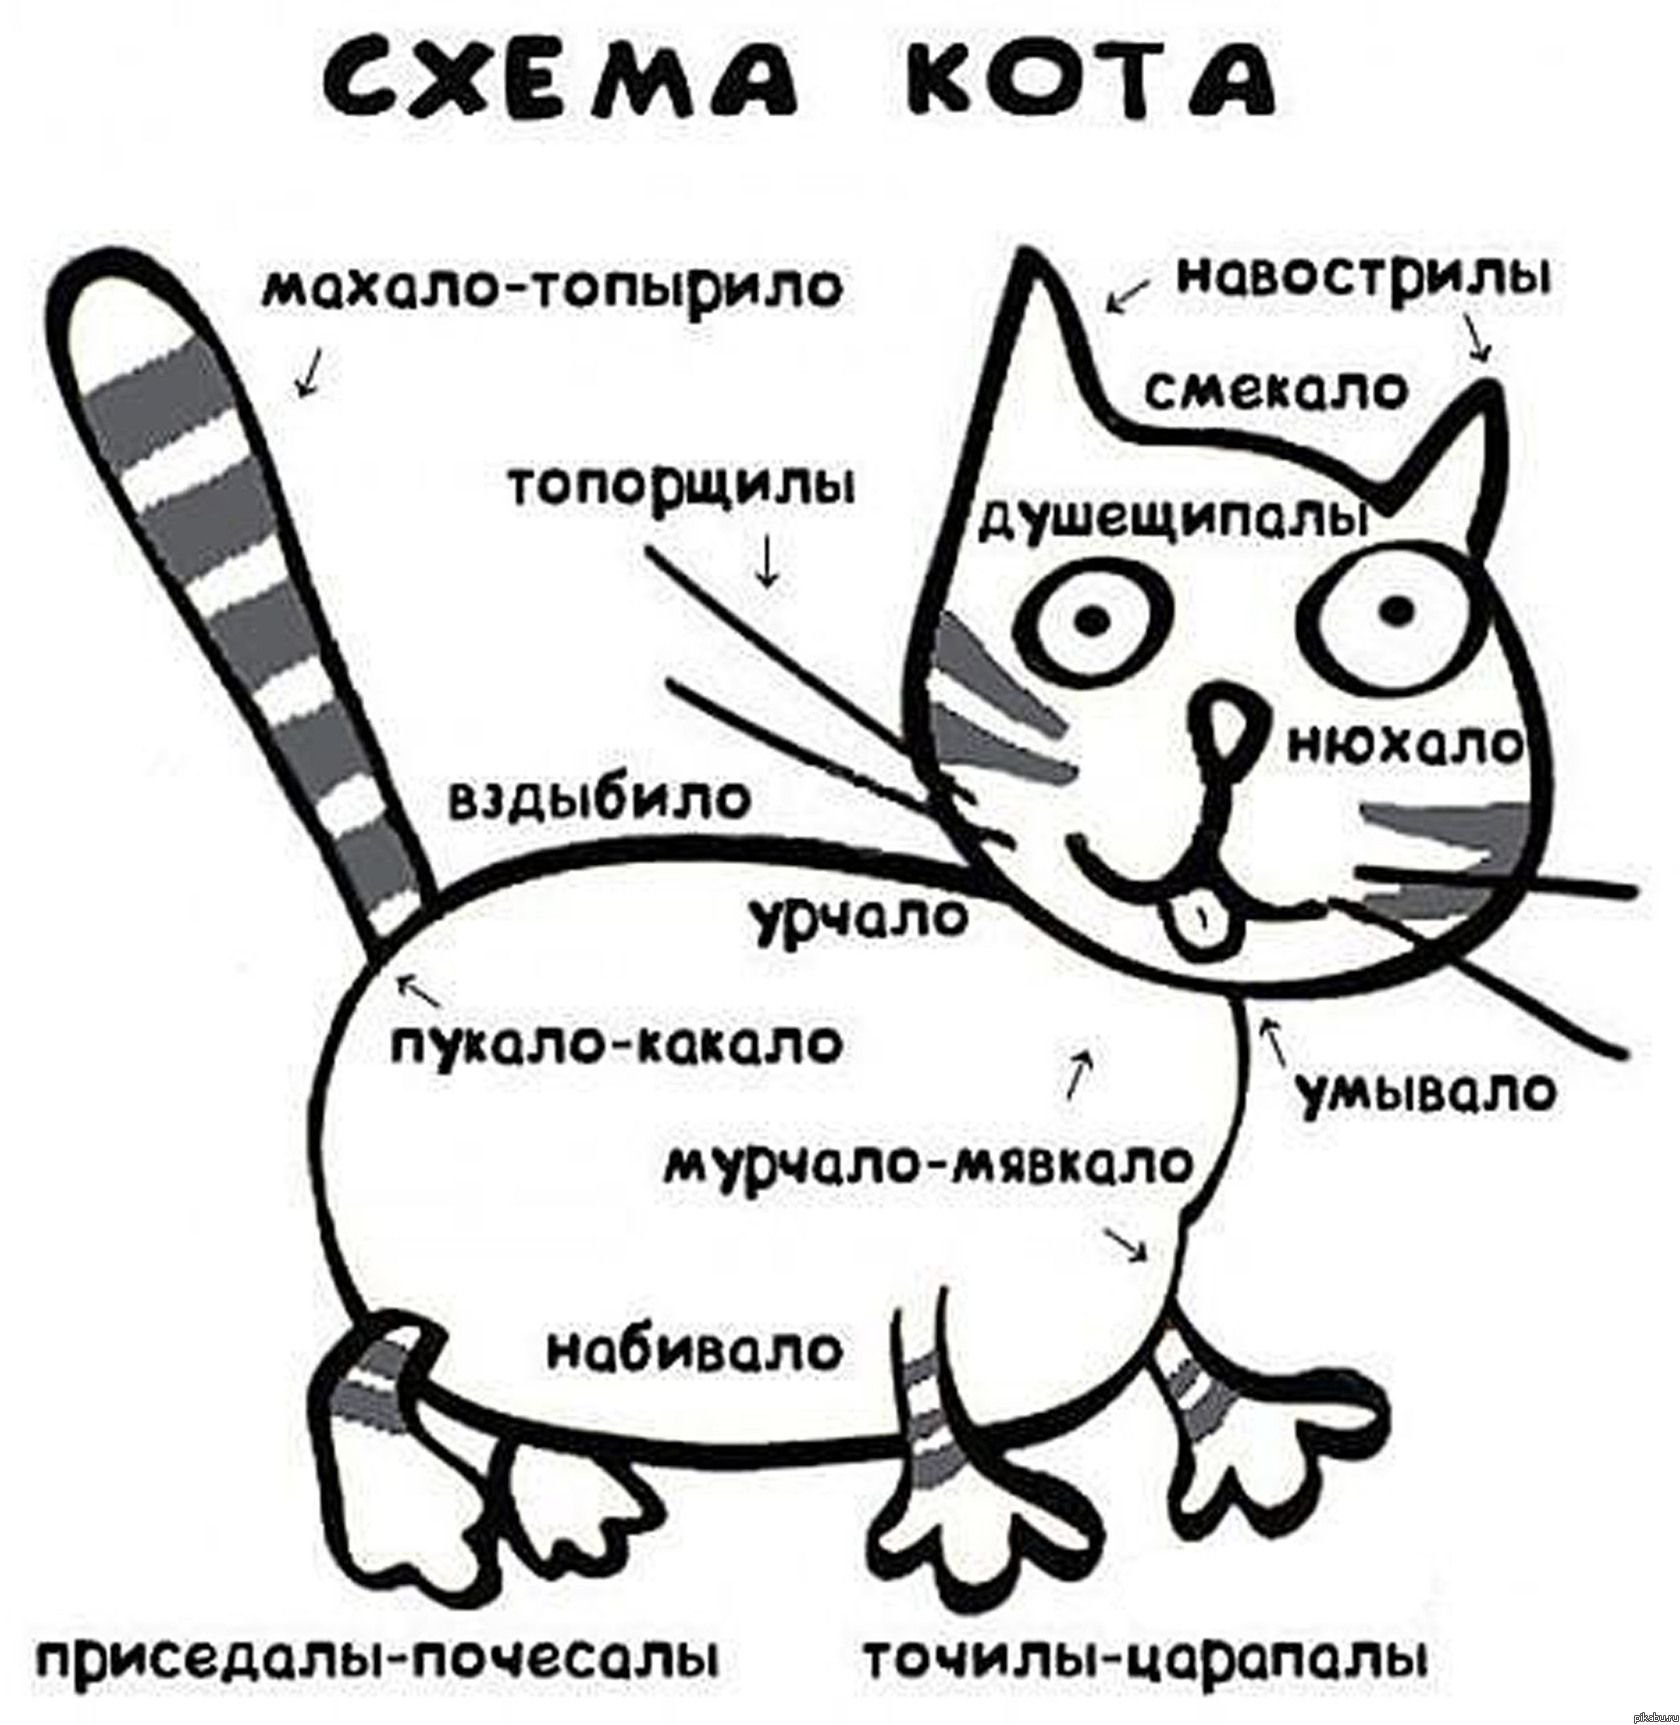 Мурчание котика. Схема кота. Принципиальная схема кота. Шуточная схема кота. Схема кота мурчало.